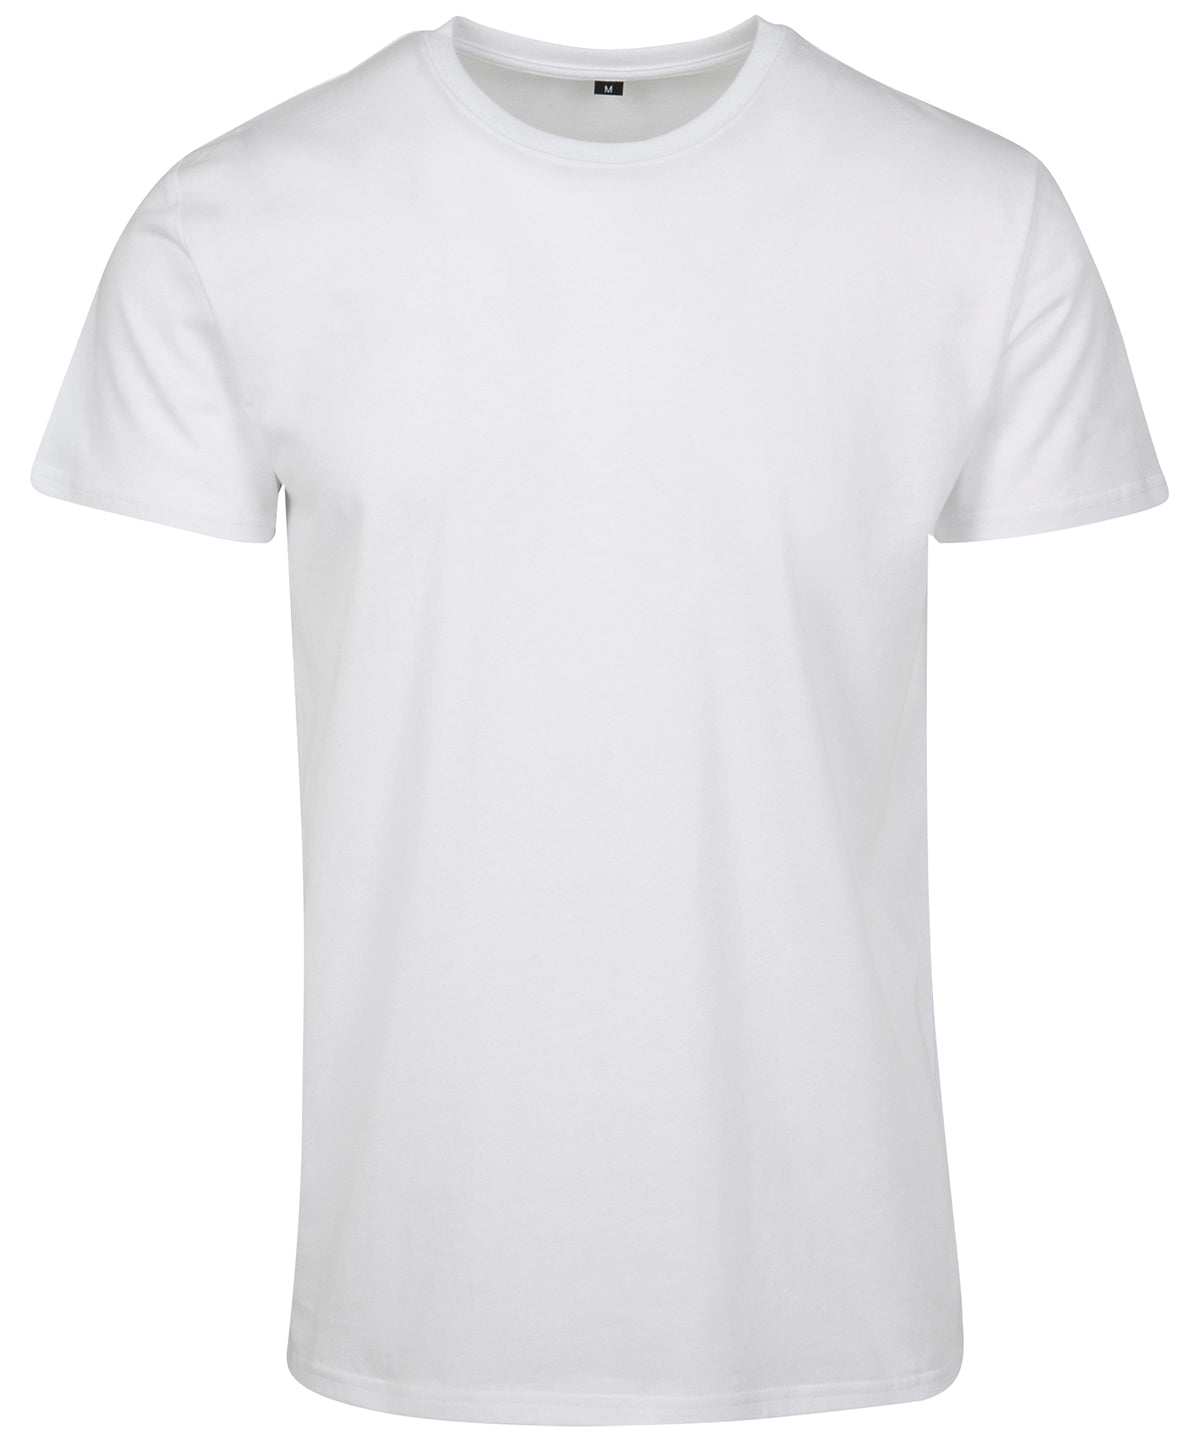 Stuttermabolir - Basic T-shirt